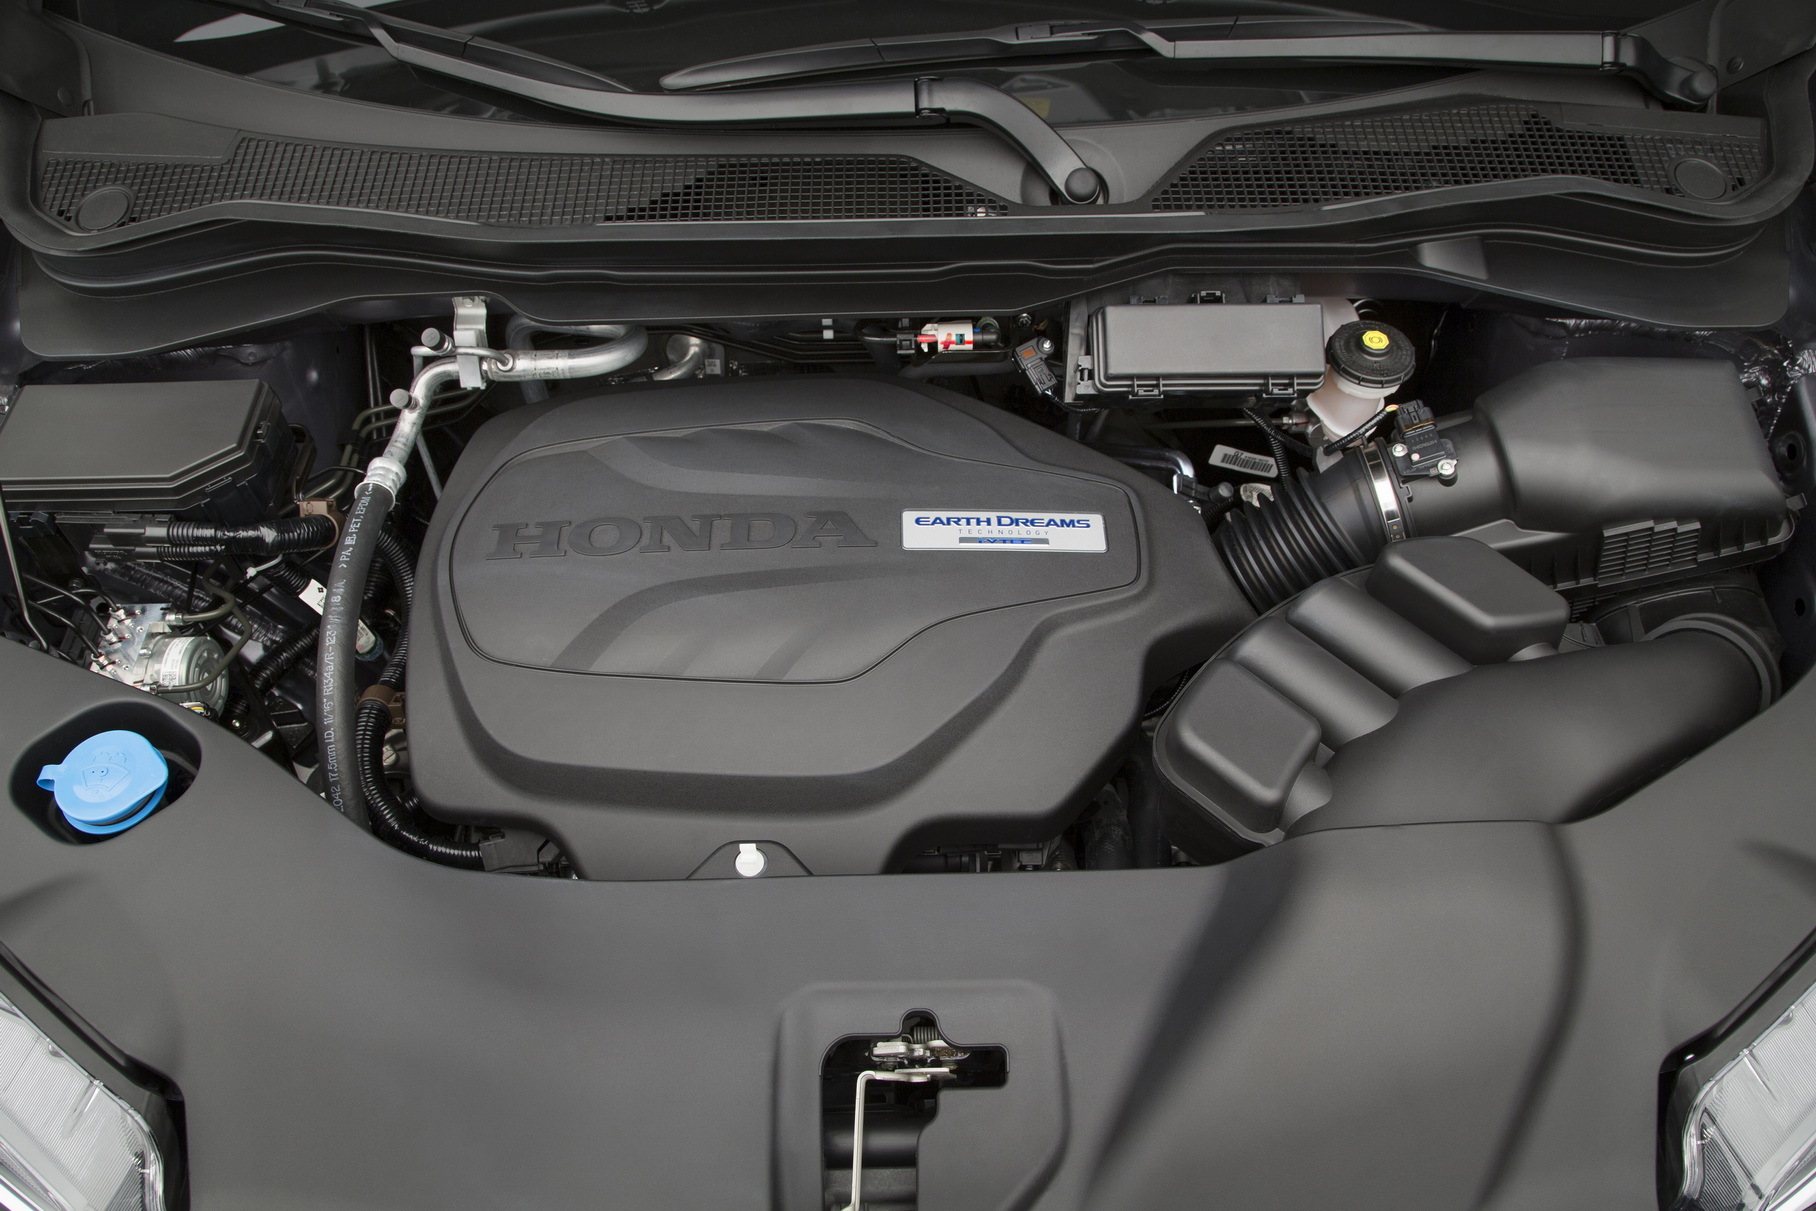 Honda признала производственный дефект двигателя V6 3.5